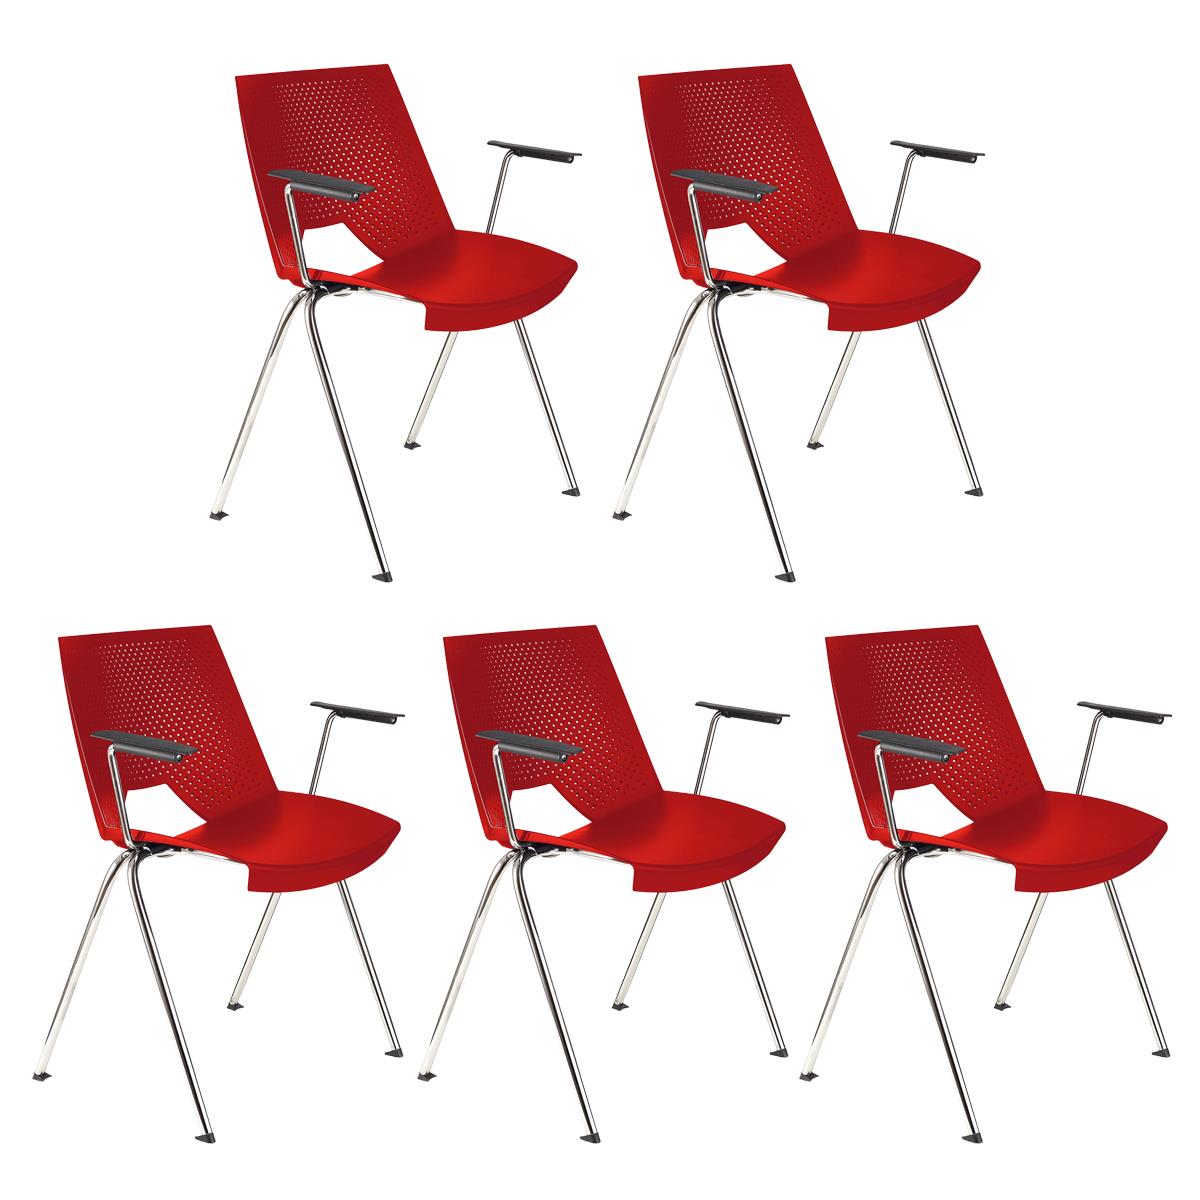 Lote 5 Cadeiras de Visita ENZO COM BRAÇOS, Confortável e Empilhável, Cor Vermelho